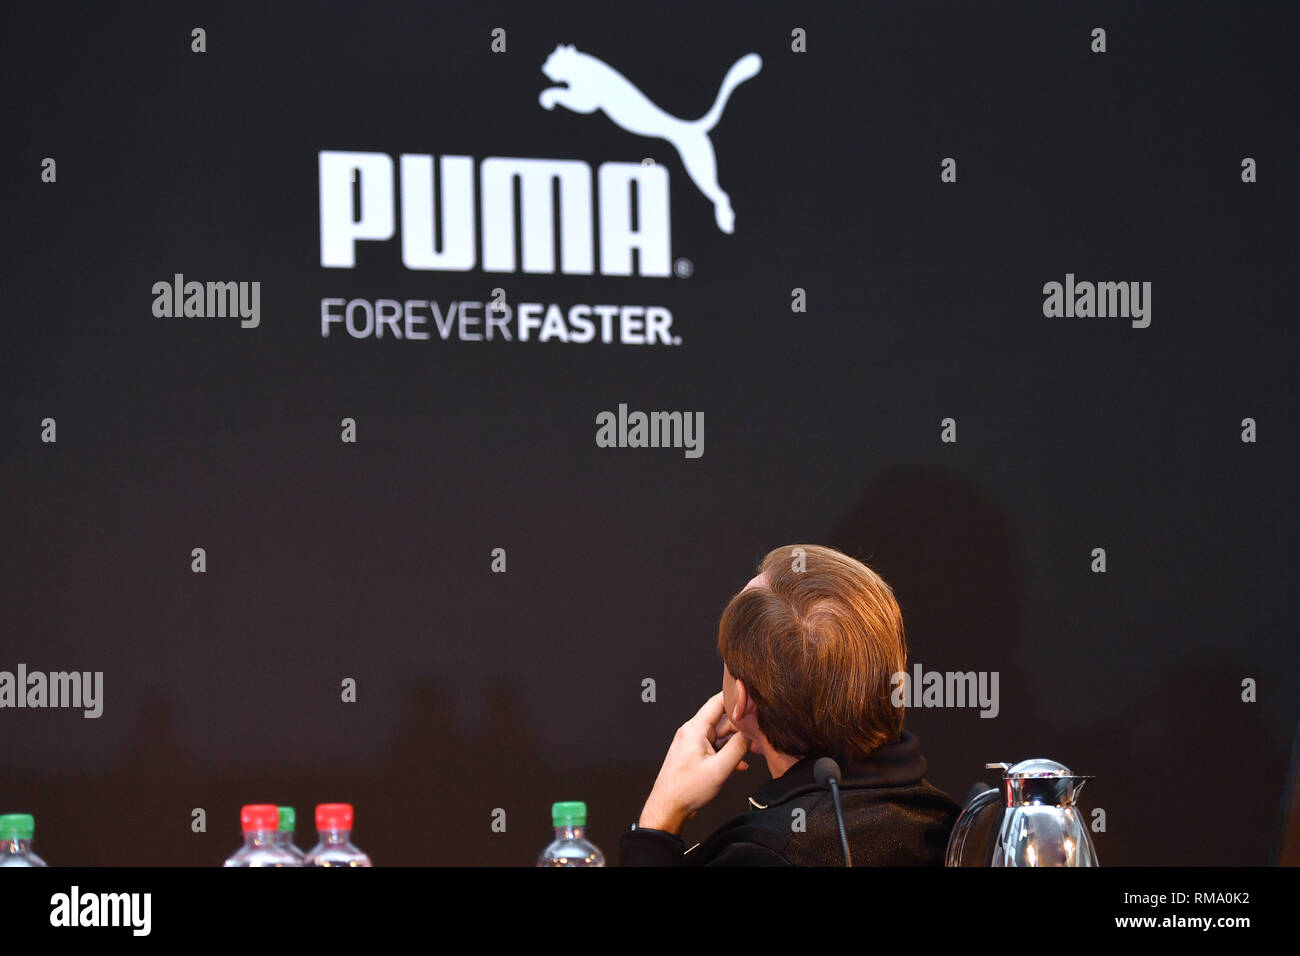 logo puma forever faster